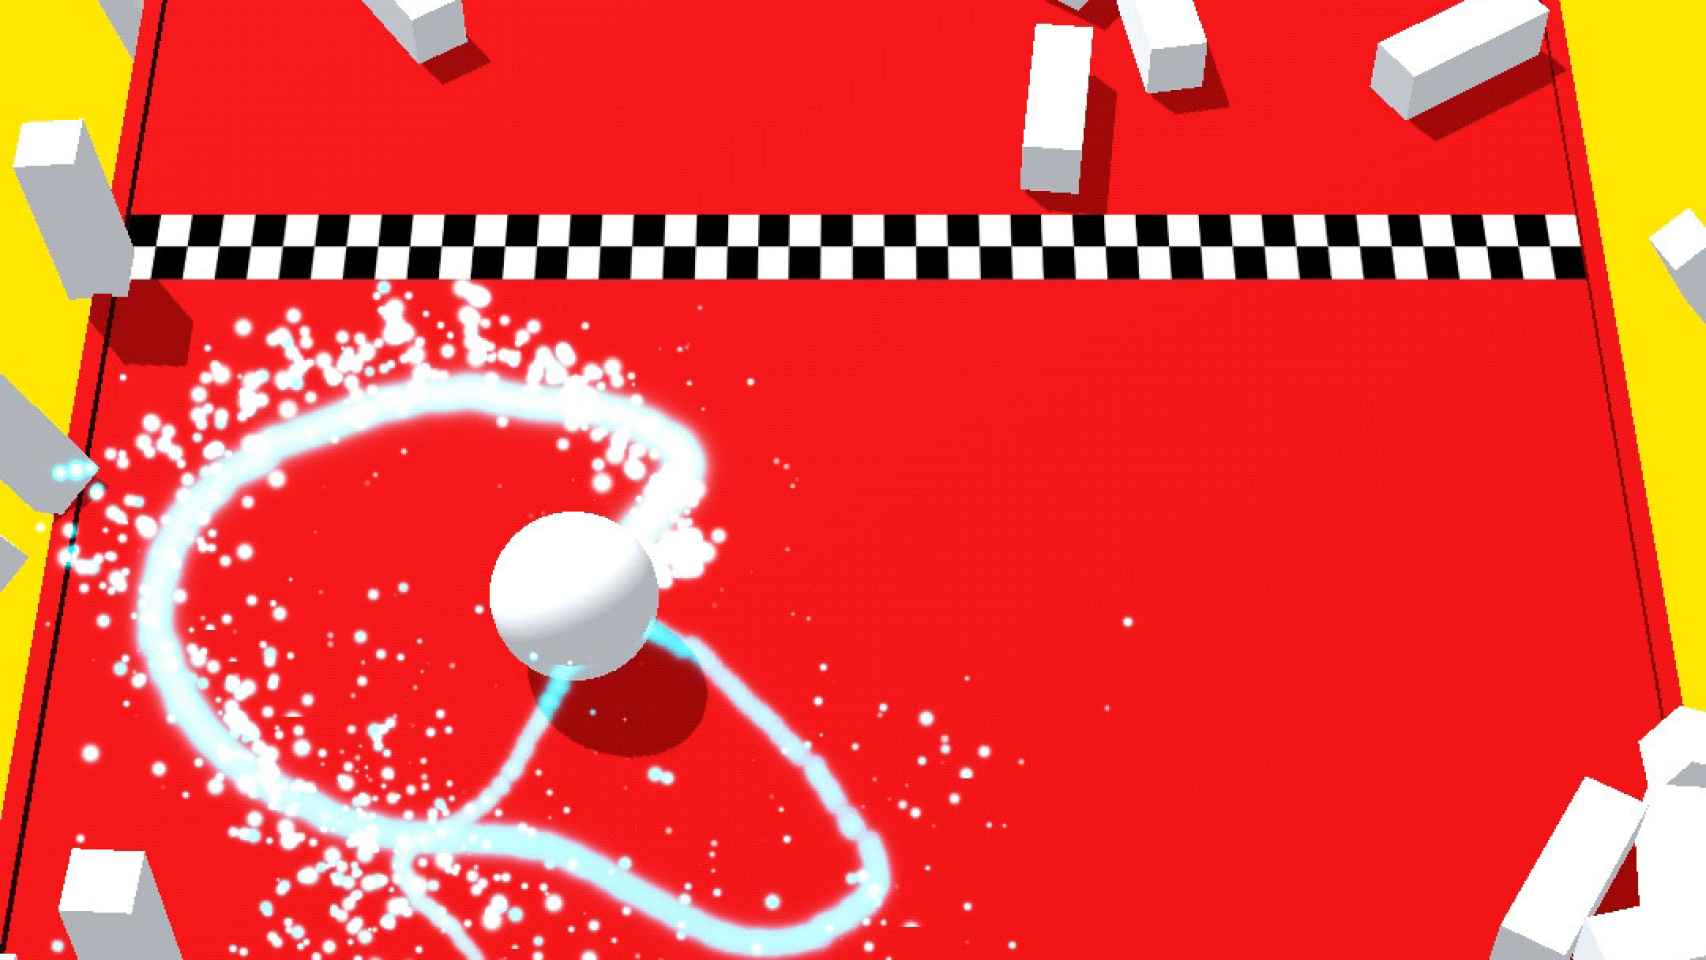 Un juego adictivo, gratis y extremadamente sencillo, así es Color Bump 3D